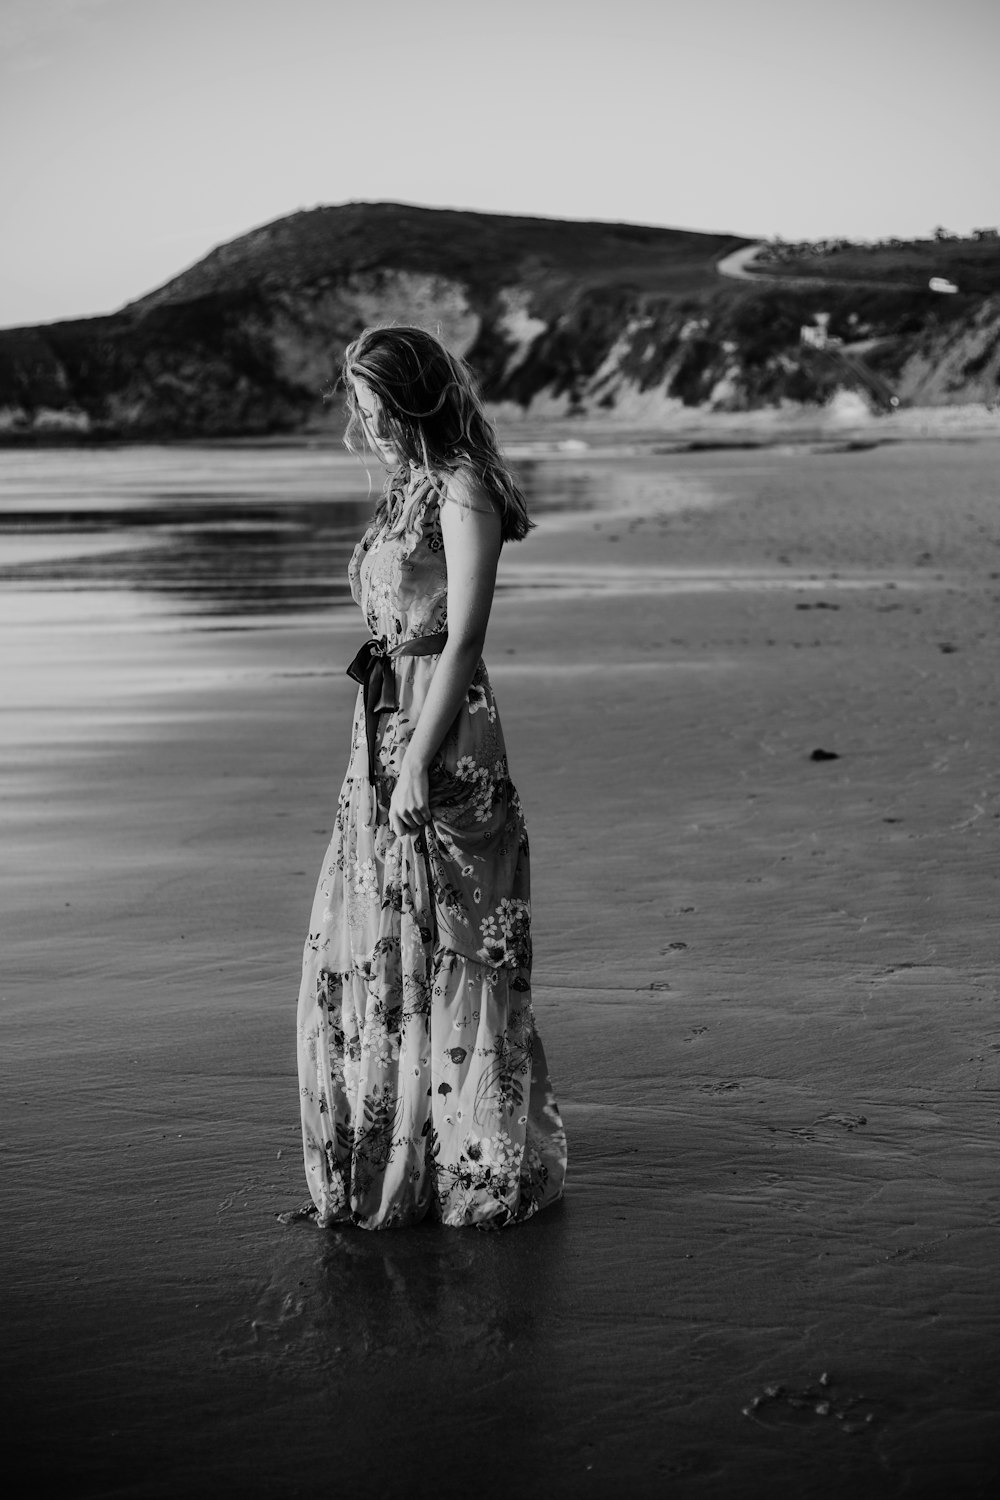 꽃무늬 긴 드레스를 입은 여자가 해변에 서 있습니다